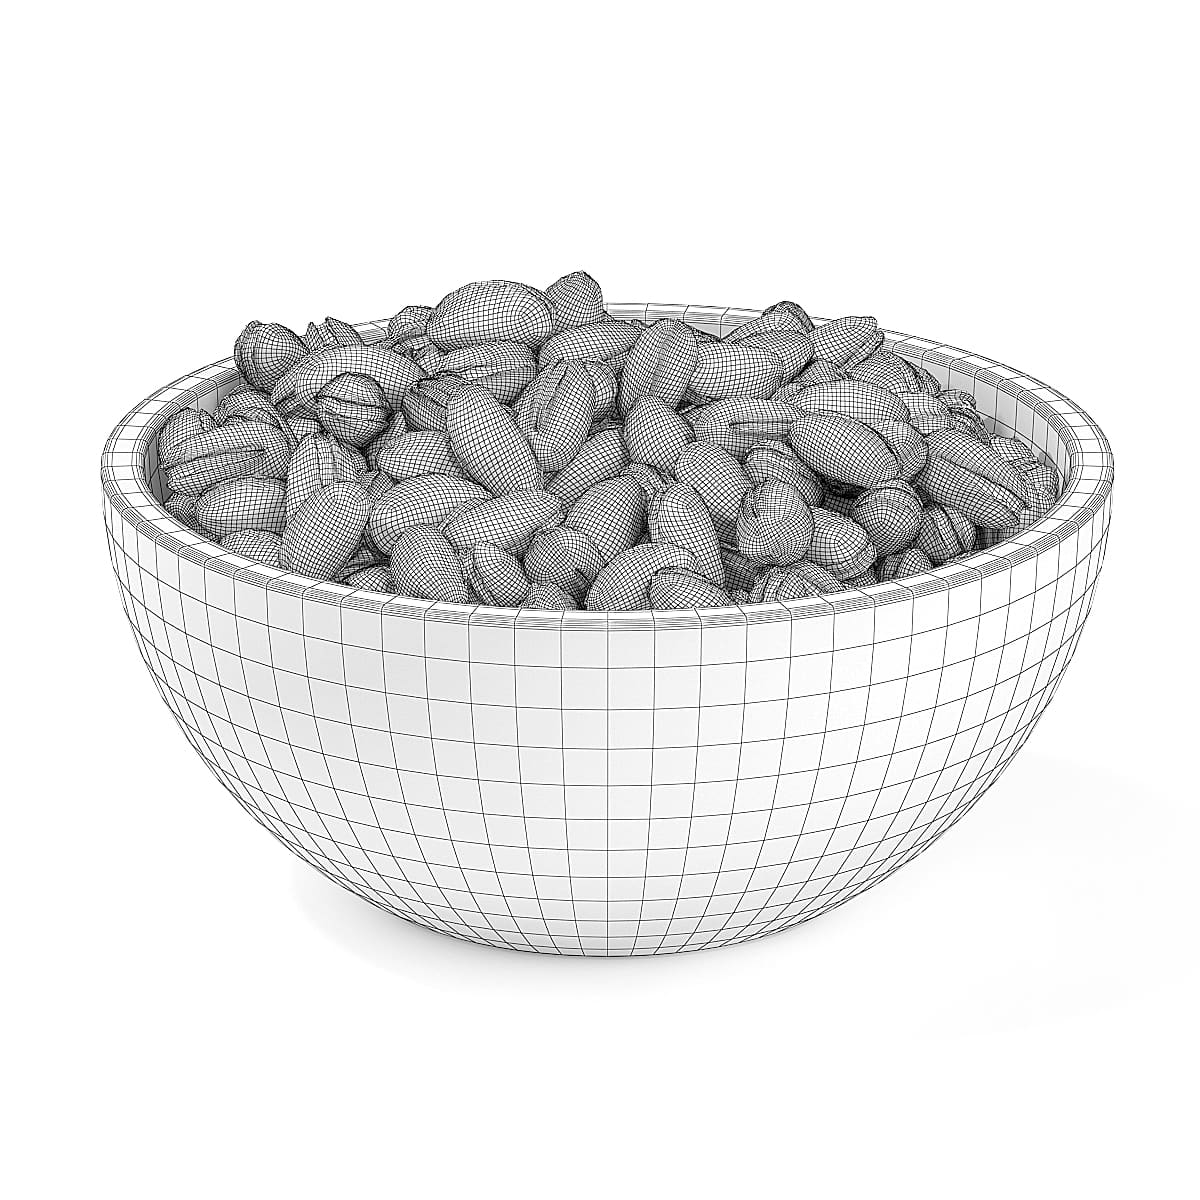 Bowl of Pistachios 3D model